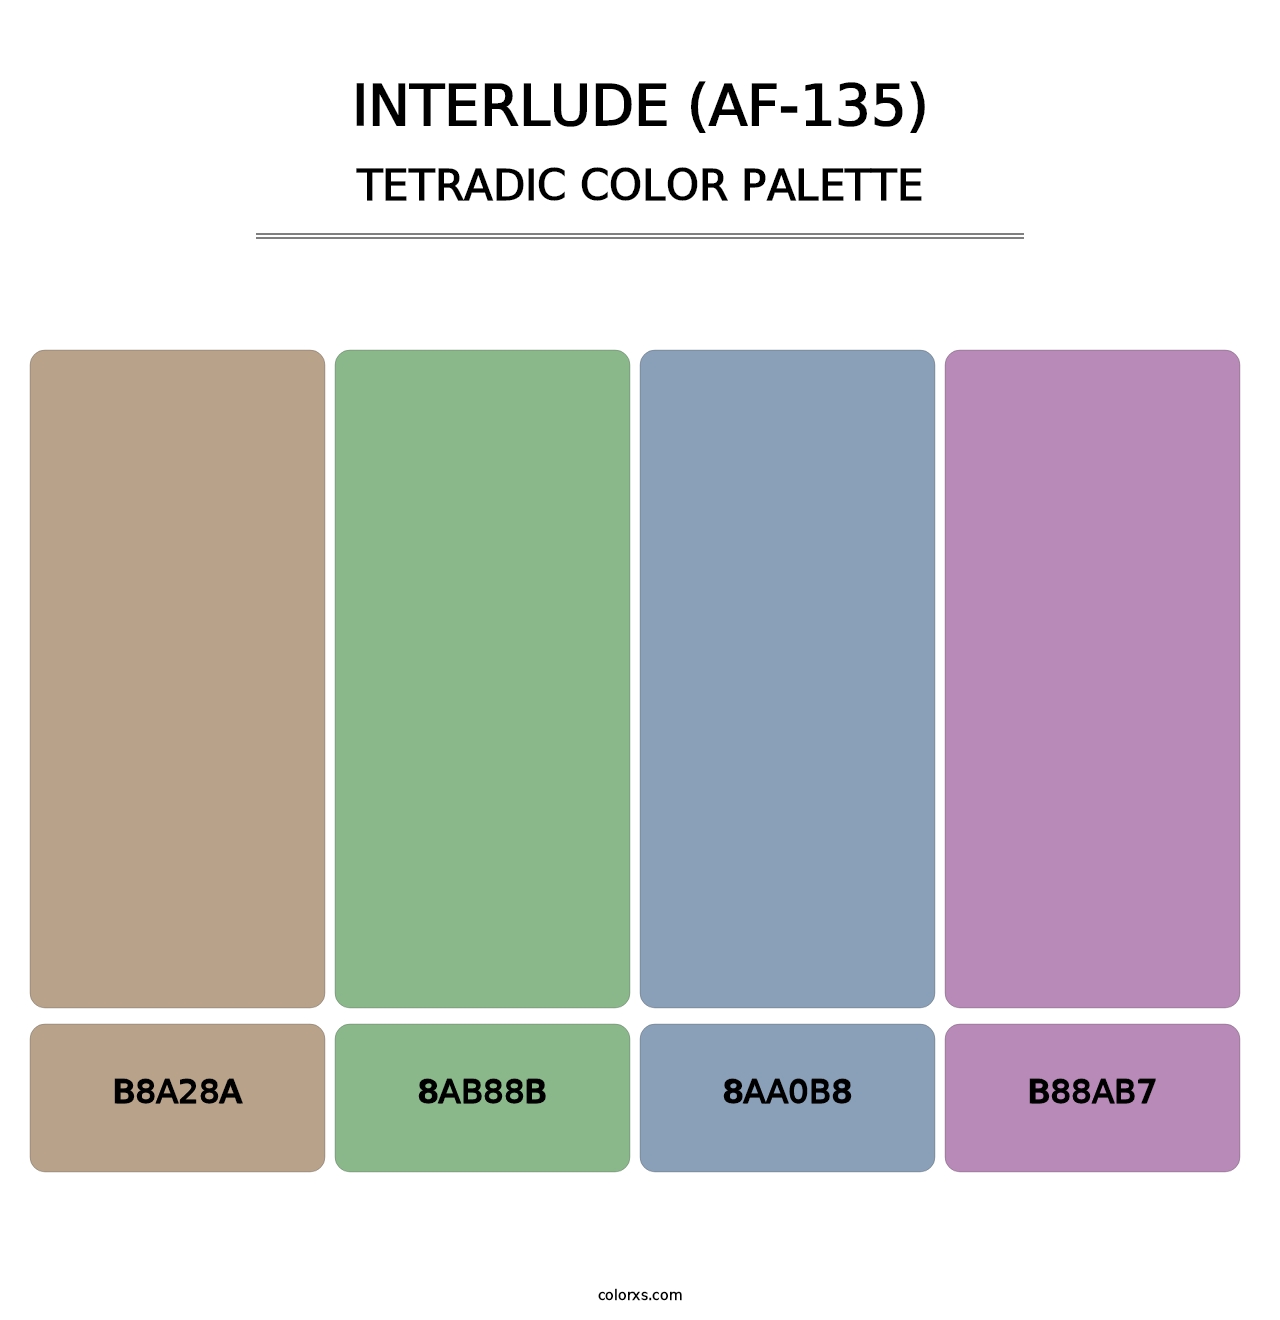 Interlude (AF-135) - Tetradic Color Palette